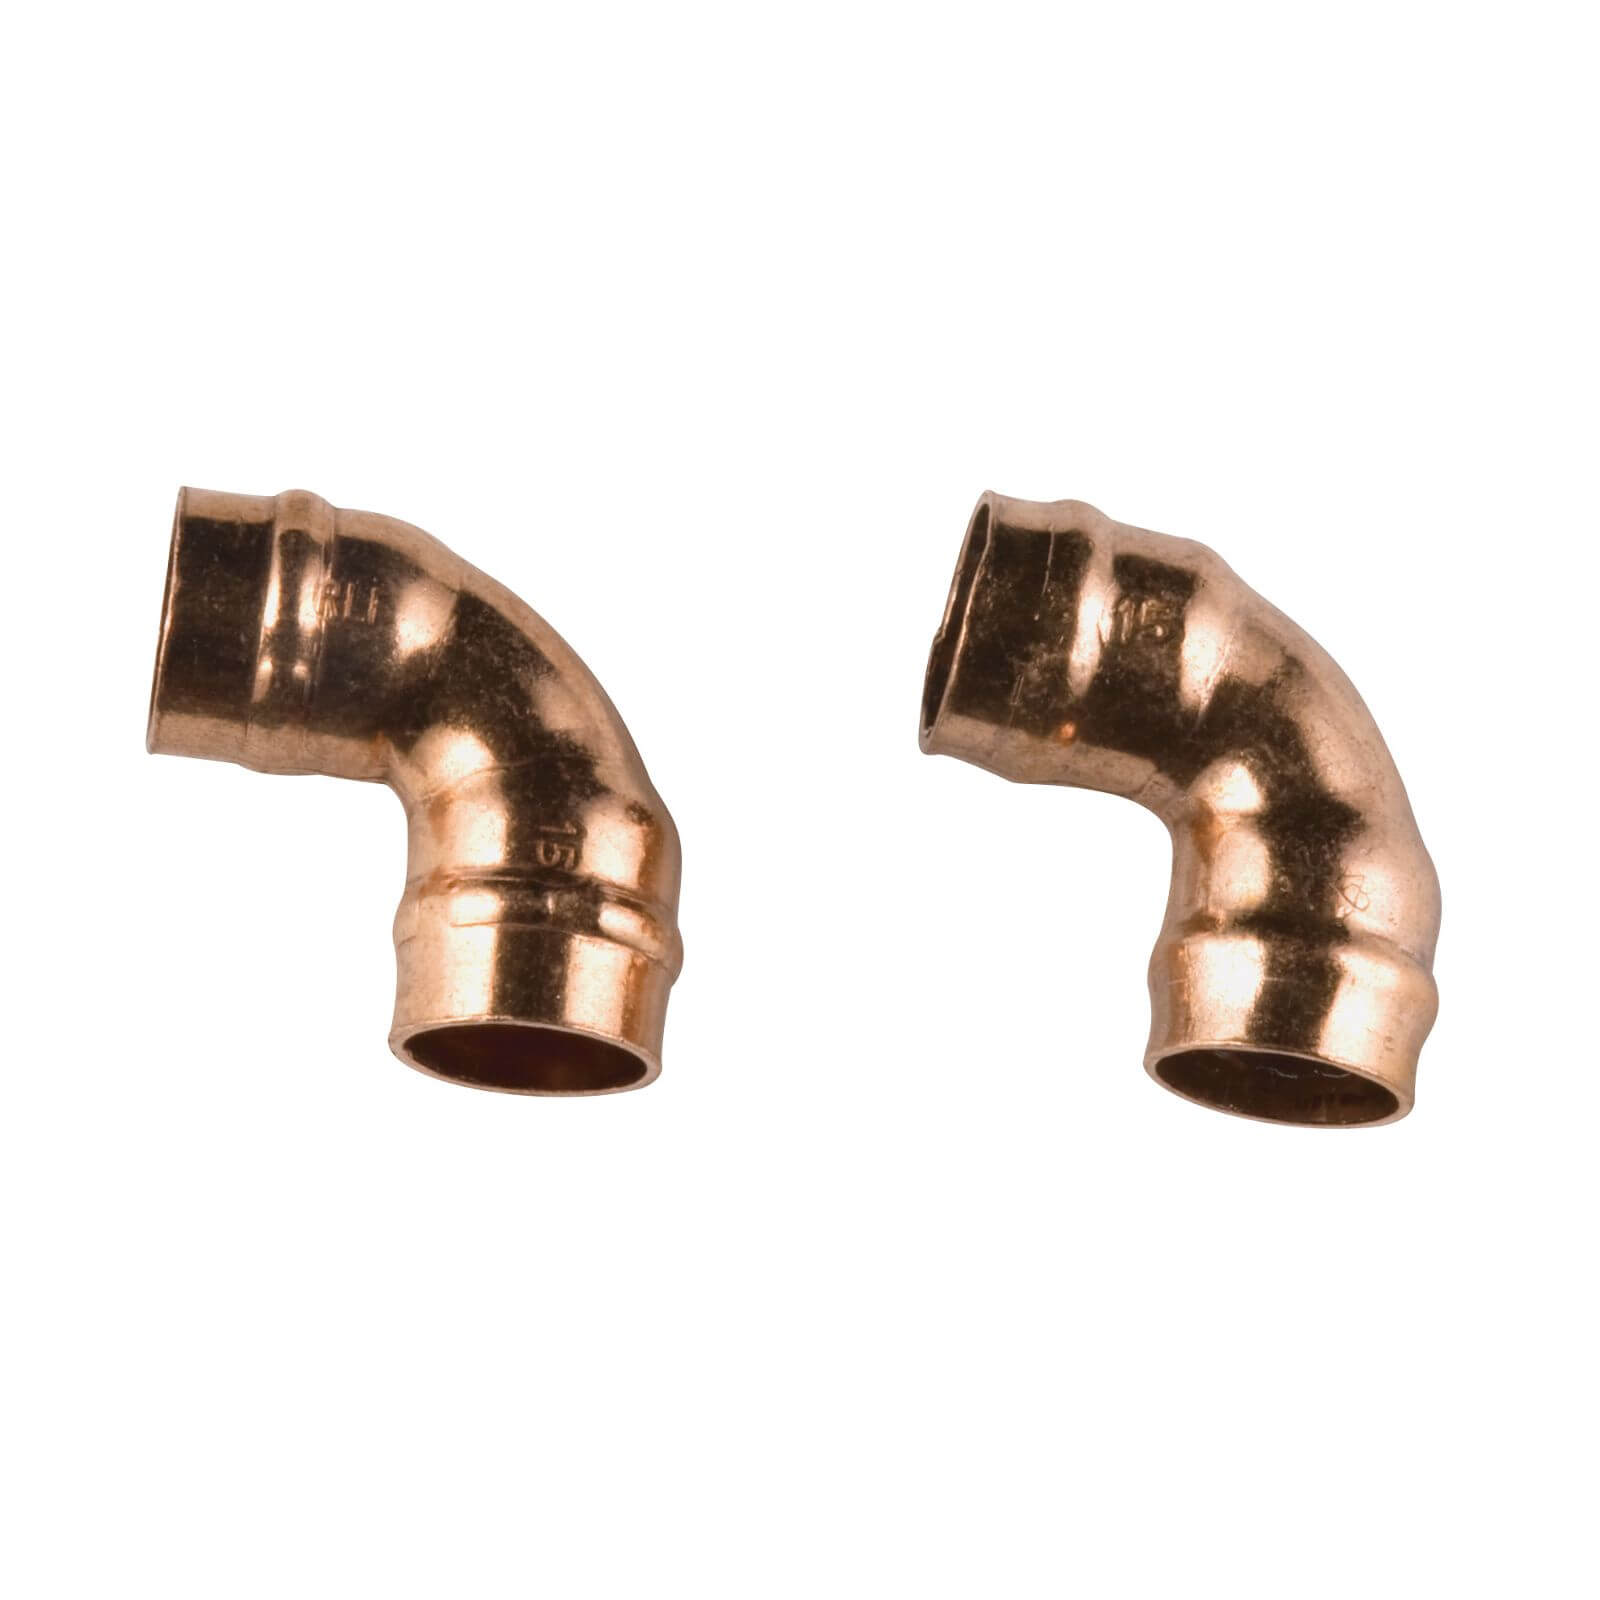 Solder Ring 90 Degree Bend - Copper - 15mm - 2 Pack